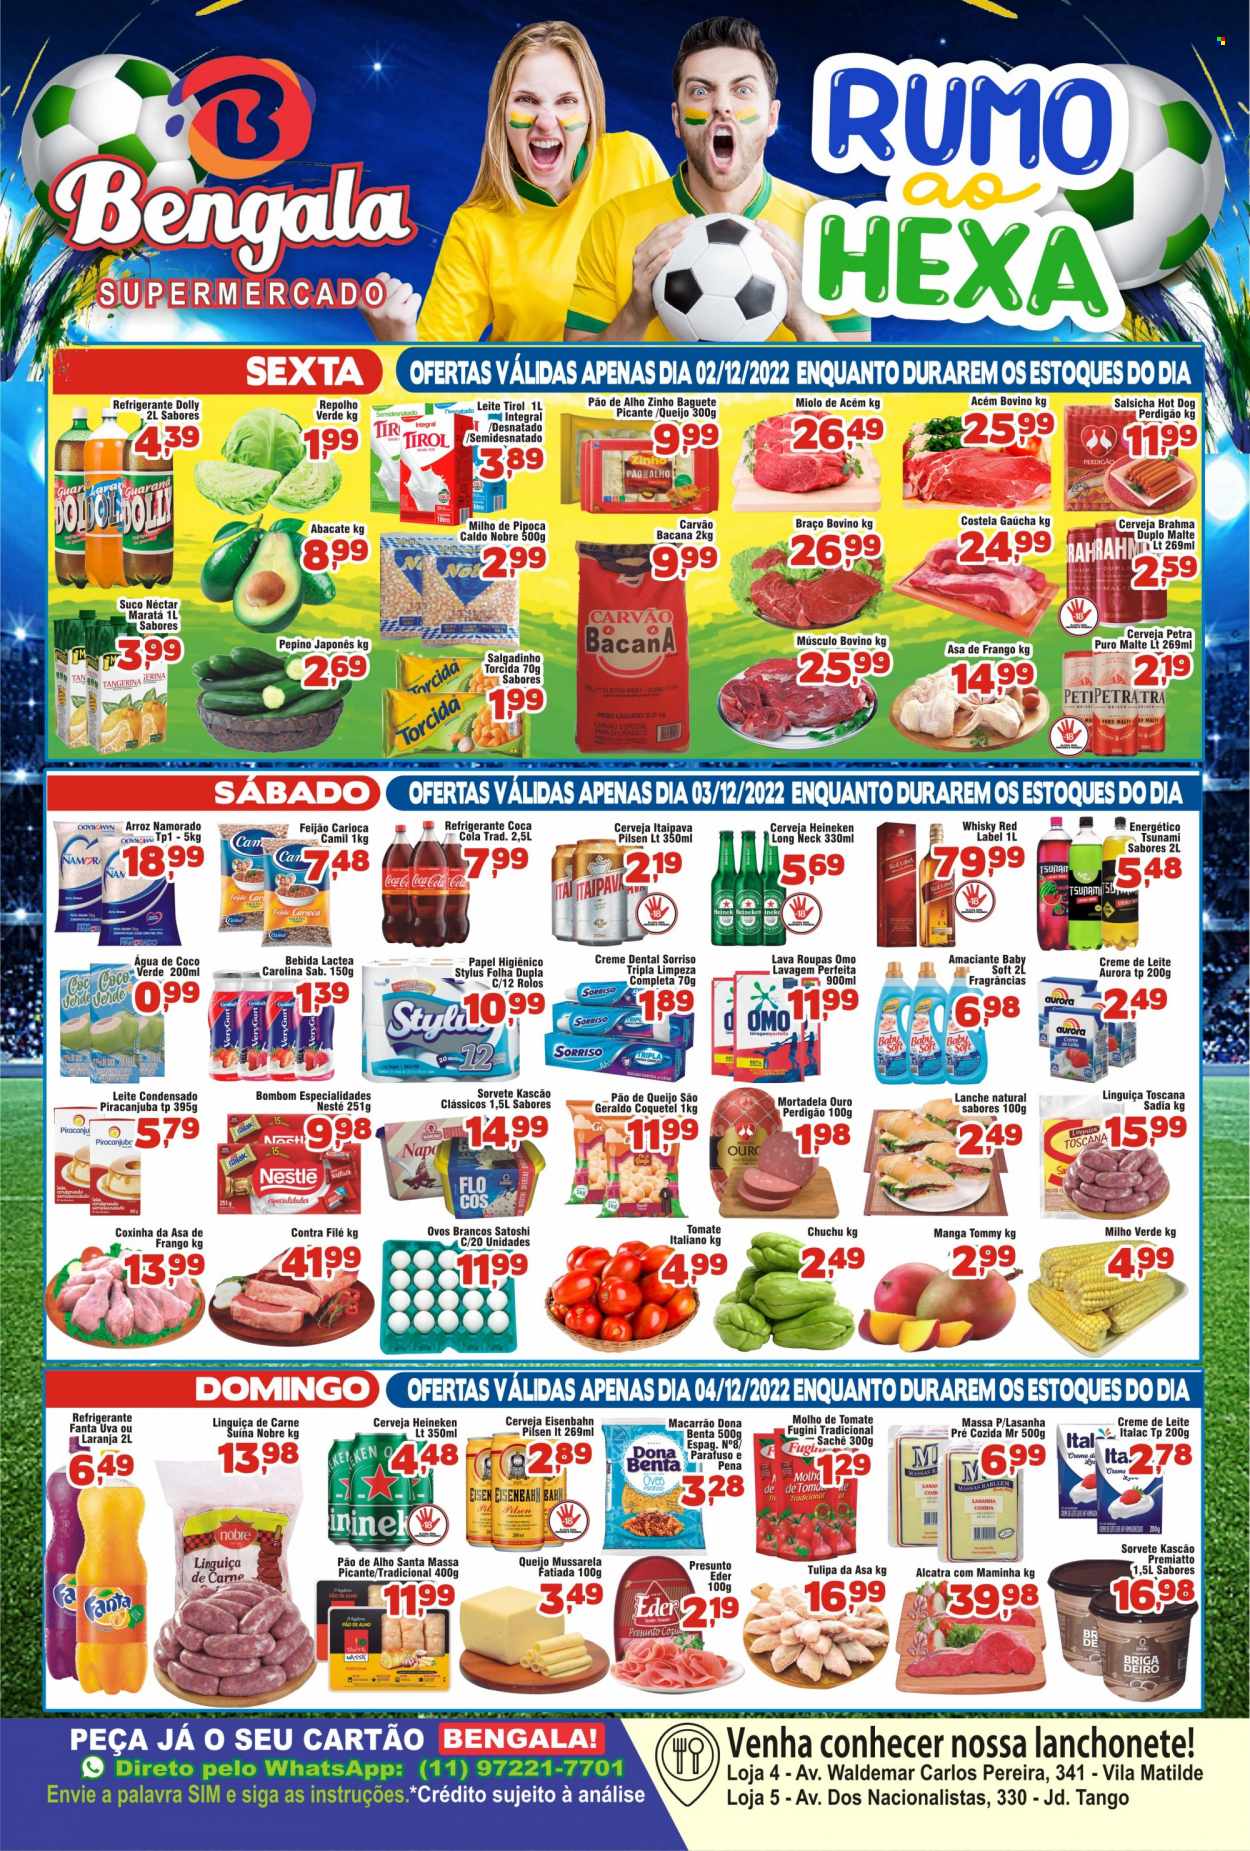 Encarte Supermercado Bengala  - 02.12.2022 - 08.12.2022.